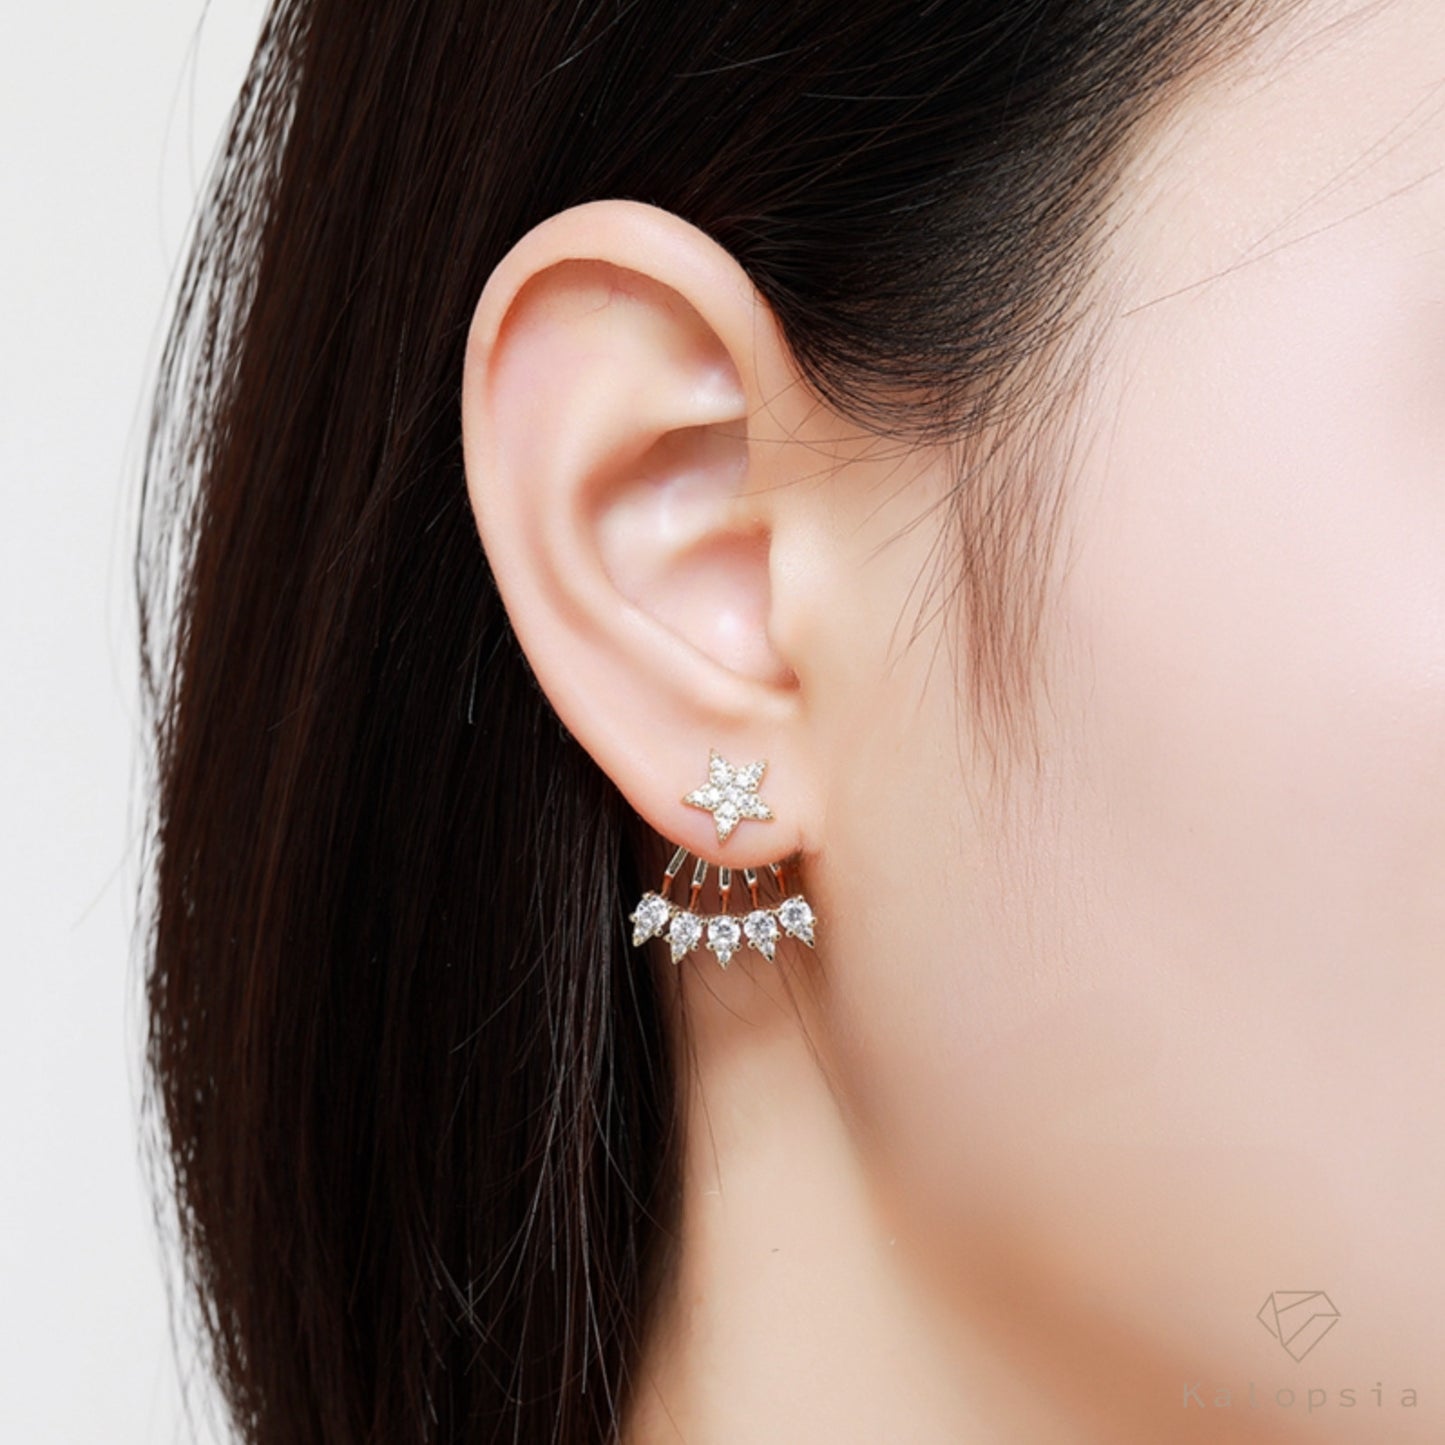 Pentagram Stud Earring - Kalopsia Accessories